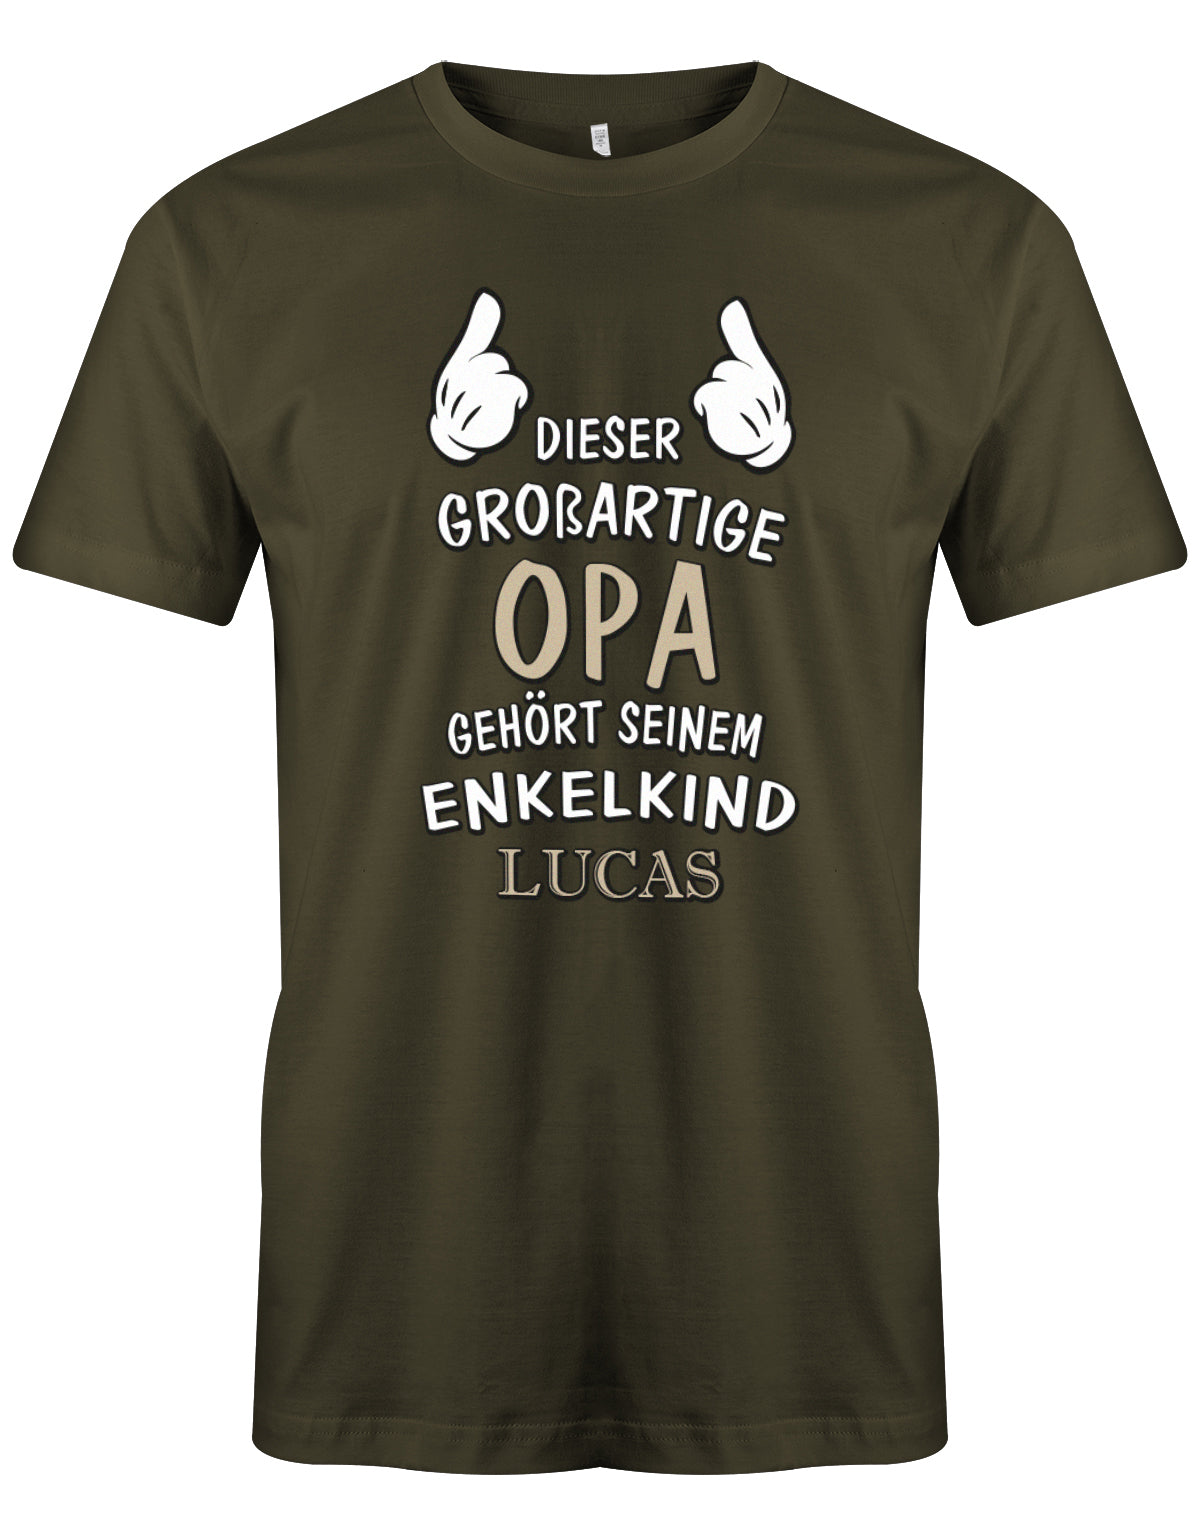 Opa Shirt personalisiert - Dieser großartige Opa gehört seinen Enkelkind. Mit Namen vom Enkelkind. Army